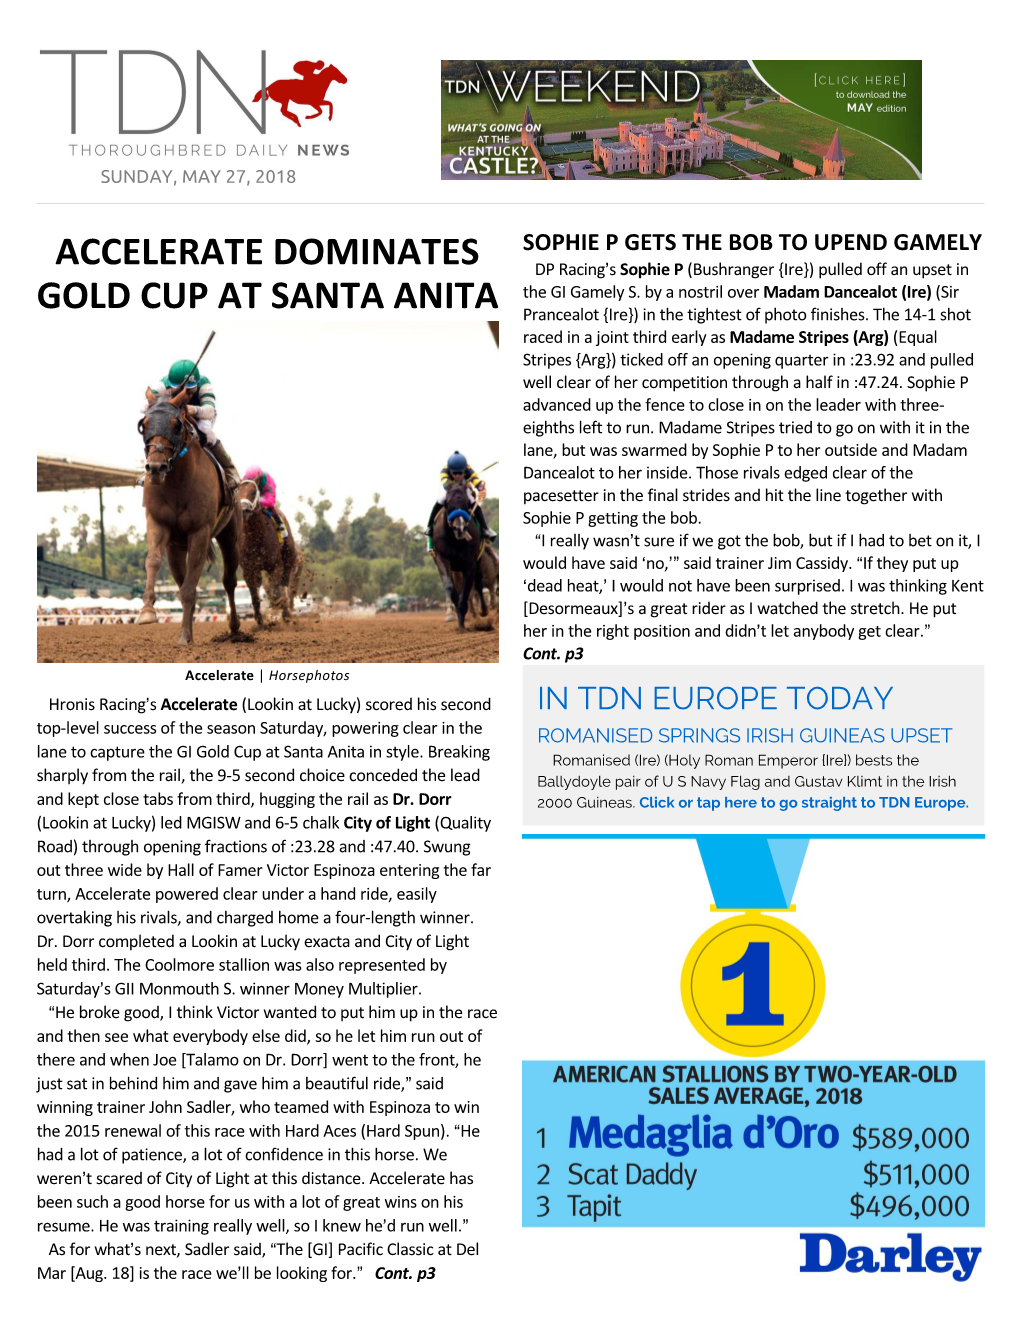 Accelerate Dominates Gold Cup at Santa Anita Cont